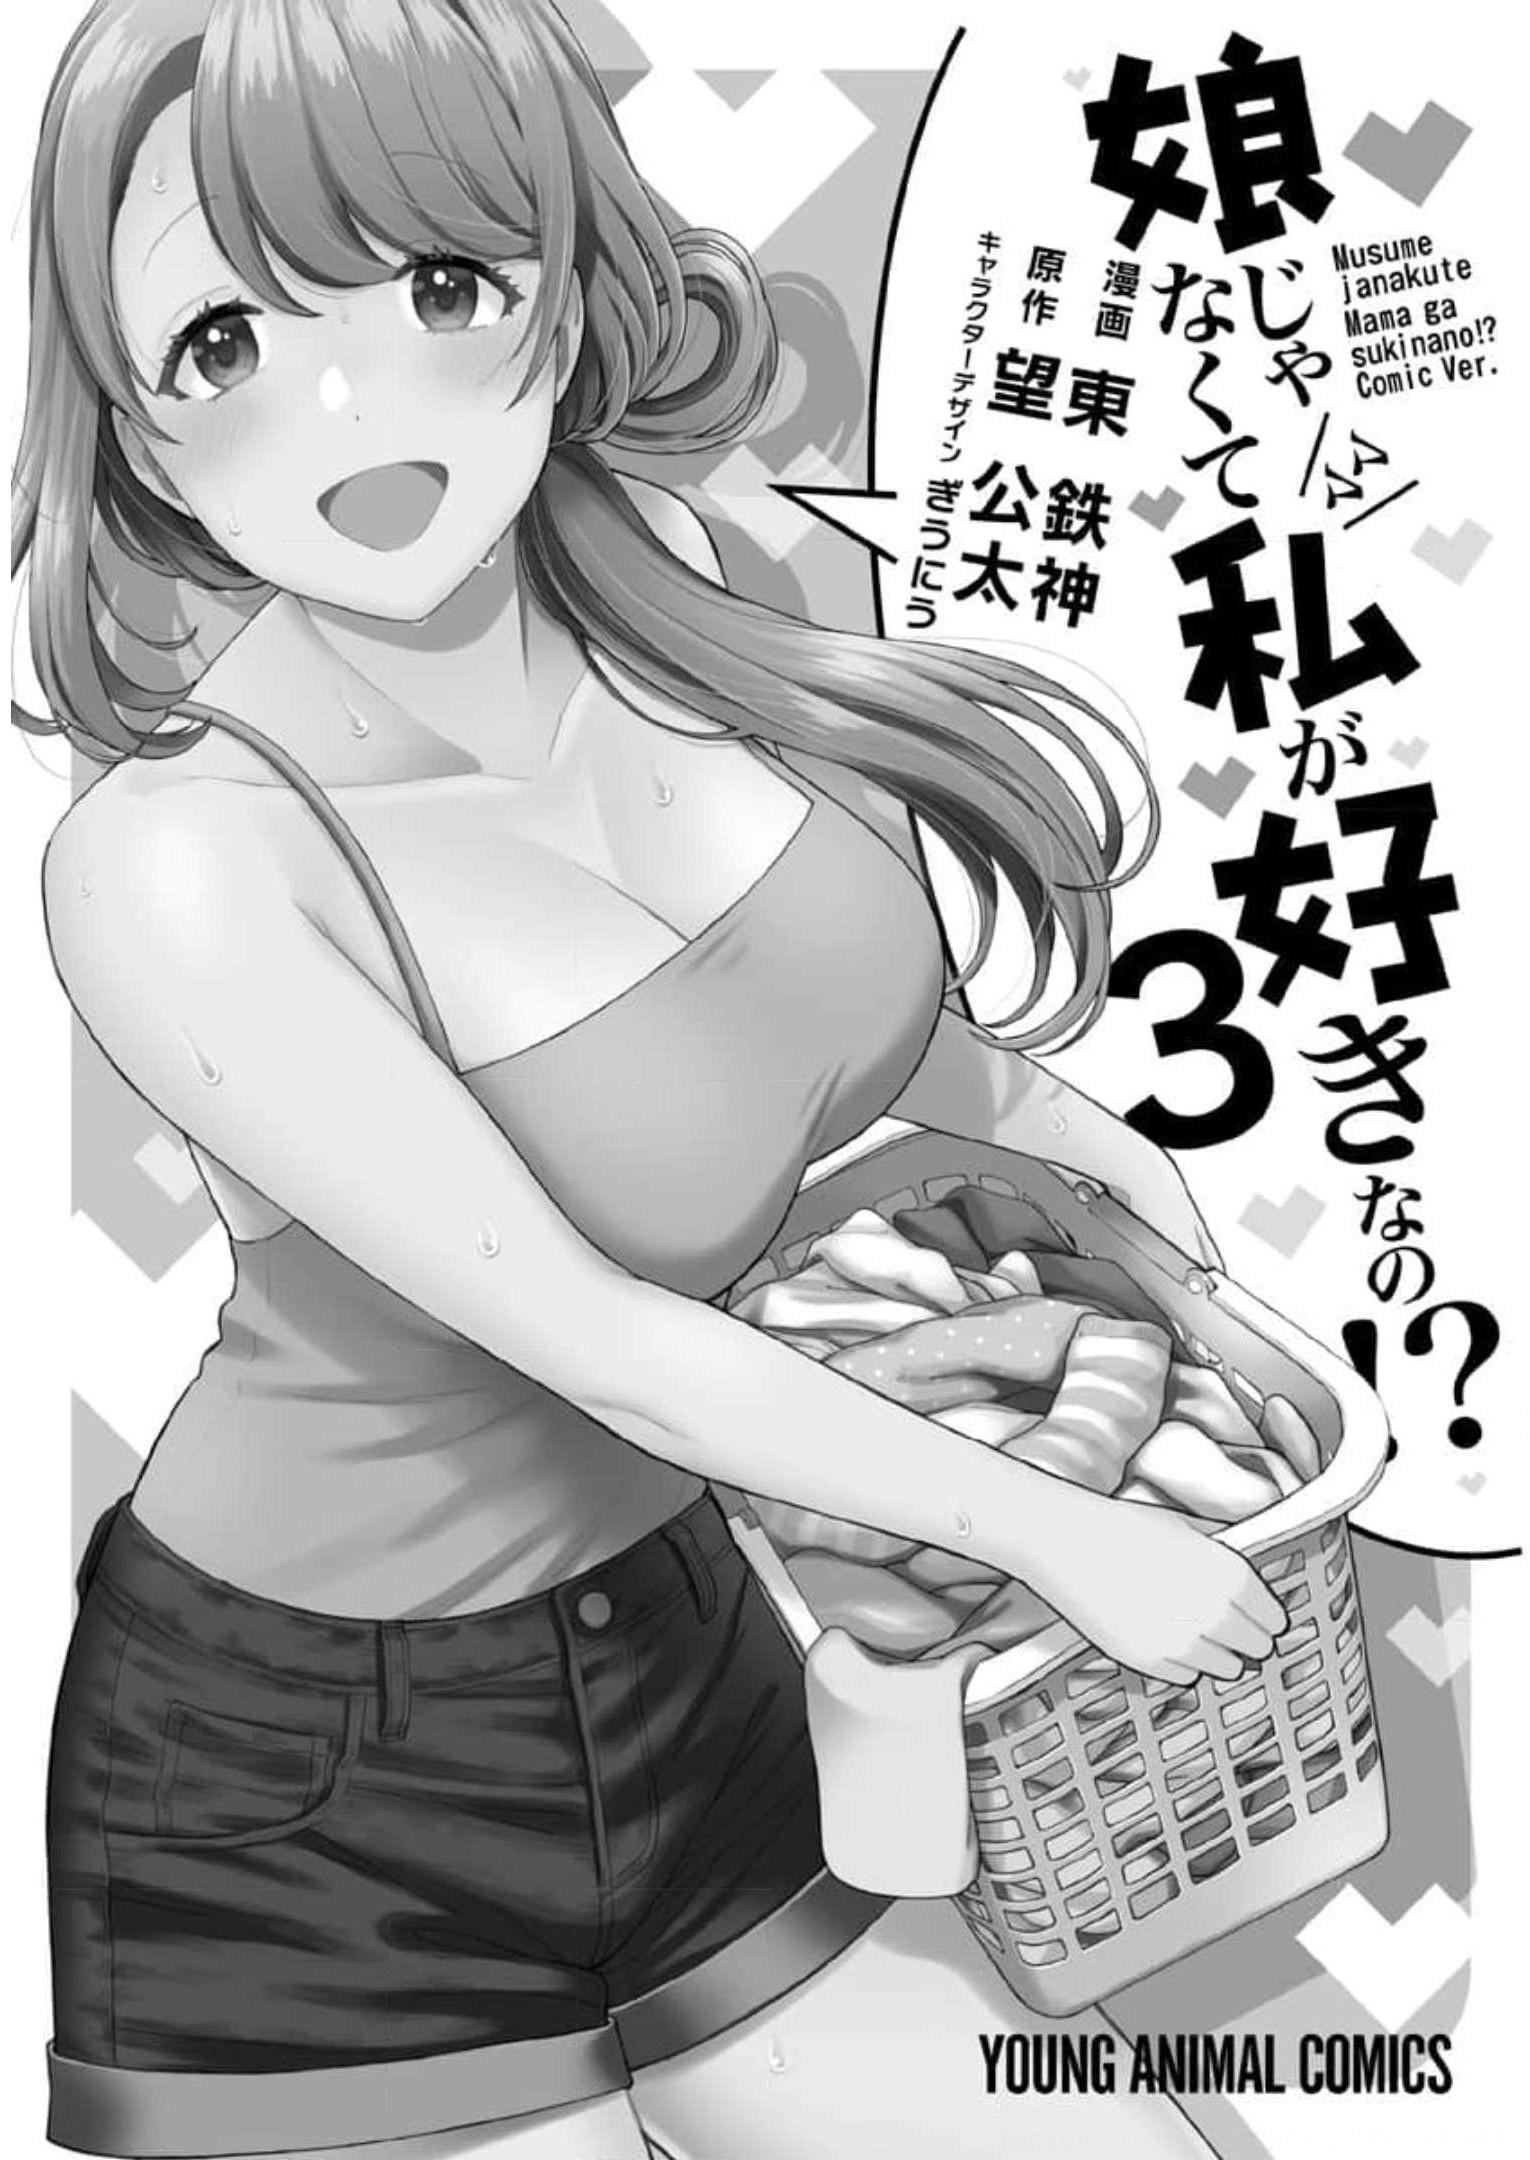 Musume Janakute, Watashi ga Suki Nano!? - Chapter 15 - Page 39